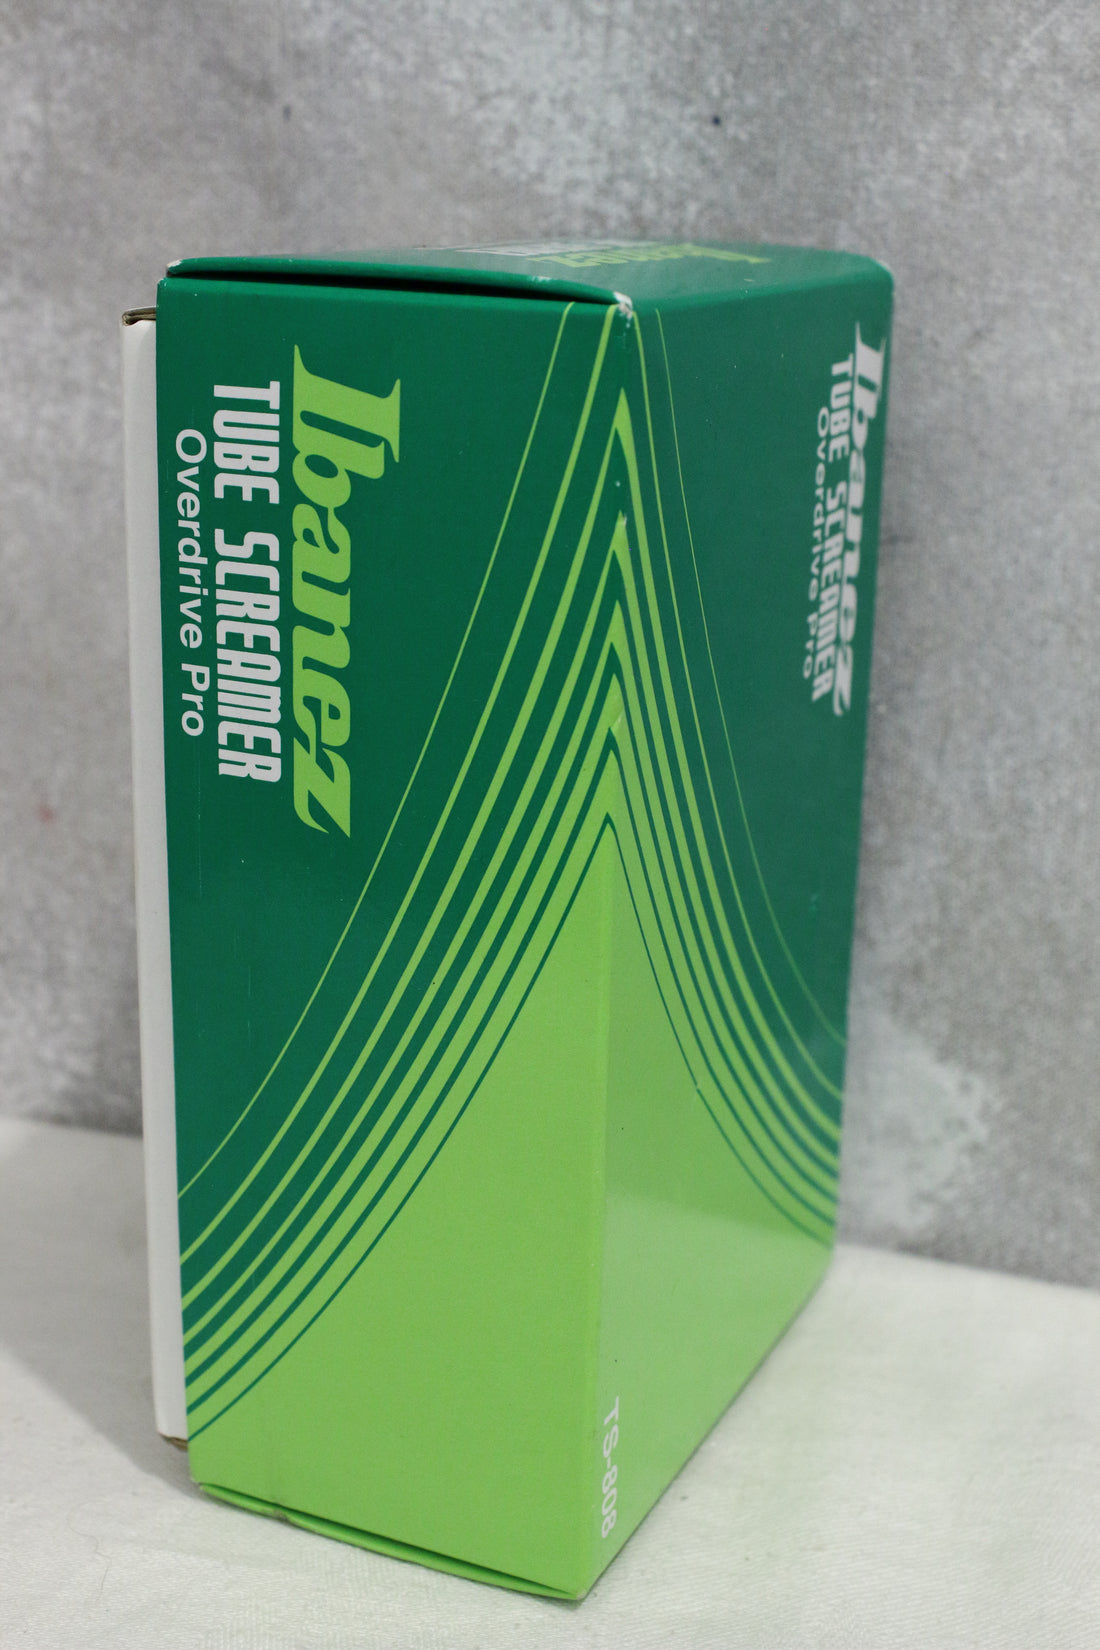 Ibanez TS808 Tube Screamer Reissue Overdrive Pedal